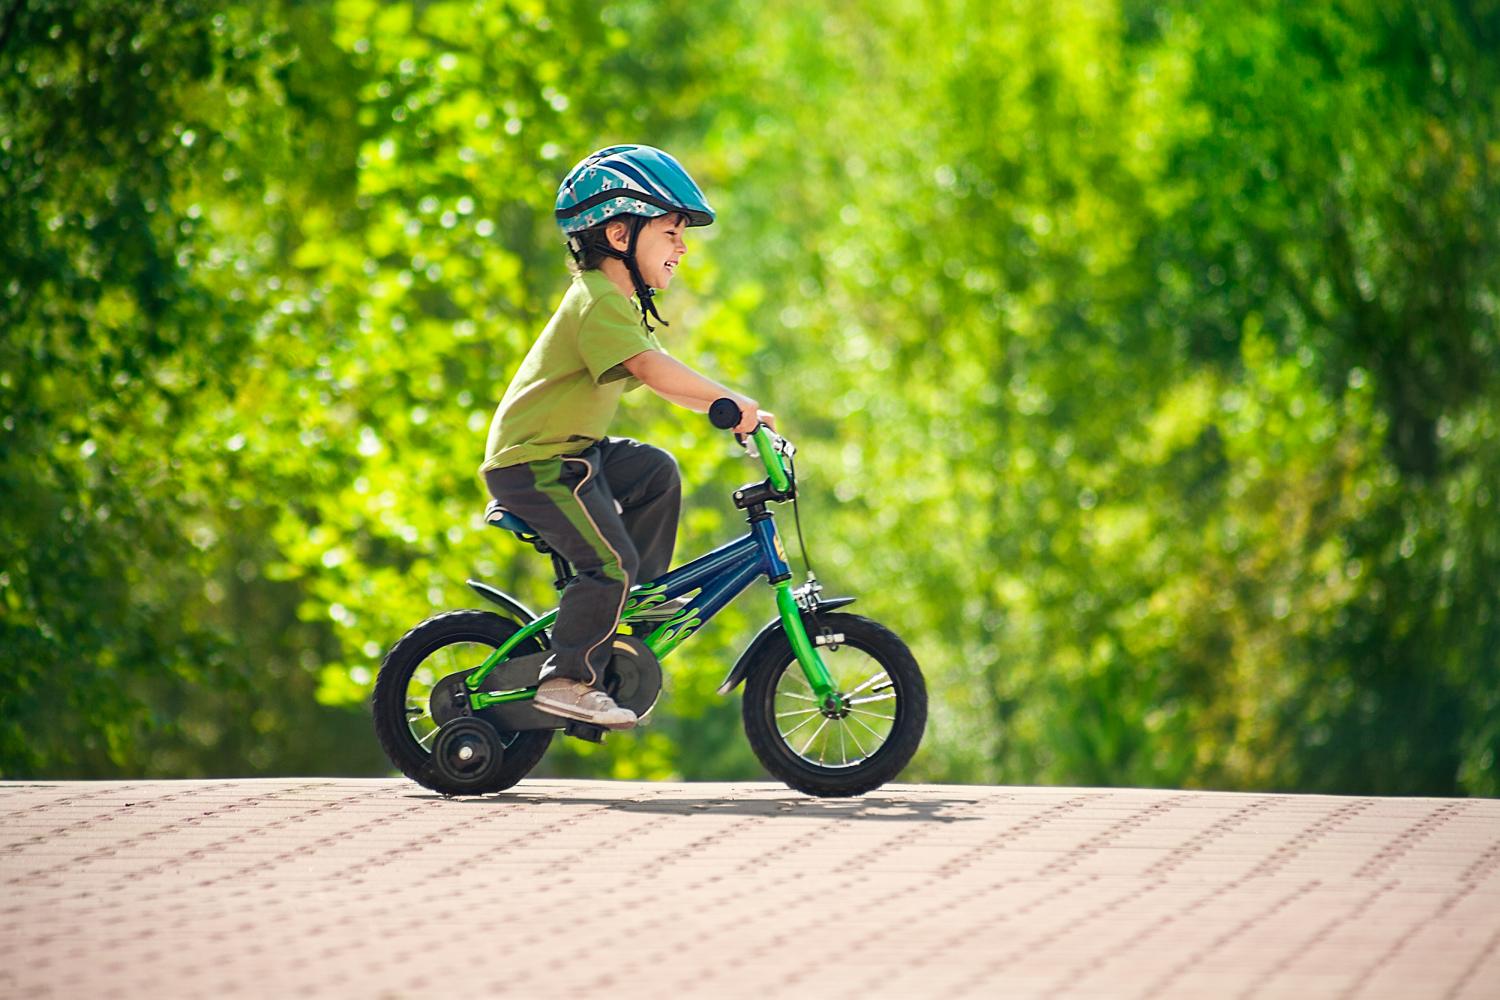  быстро научить ребенка кататься на велосипеде